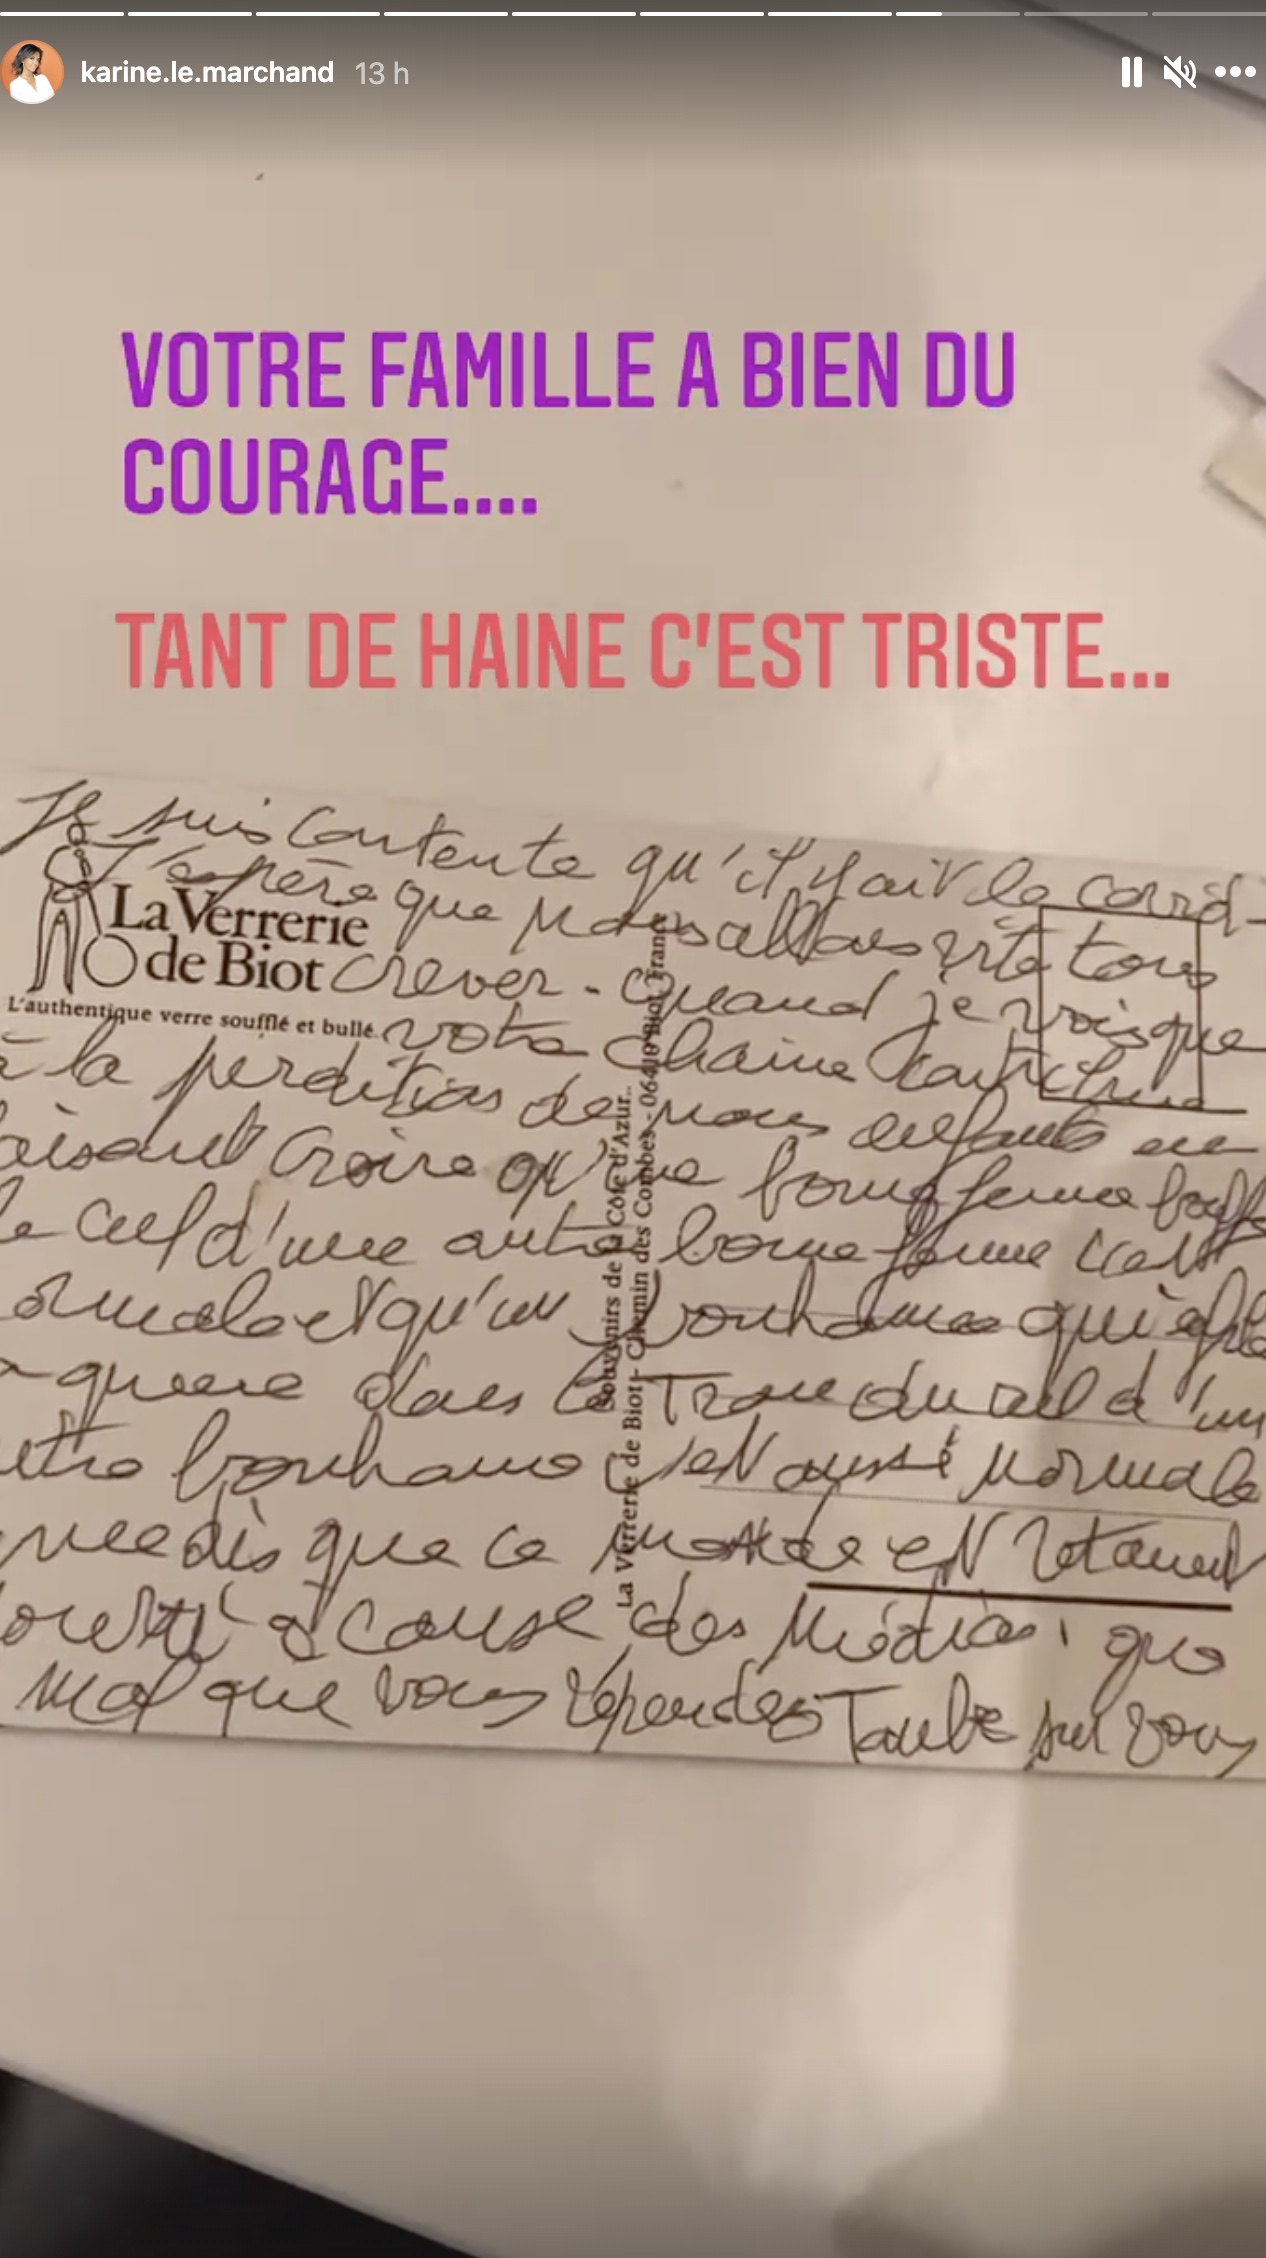 Karine Le Marchand reçoit une lettre contenant des propos homophobes et y répond magnifiquement !